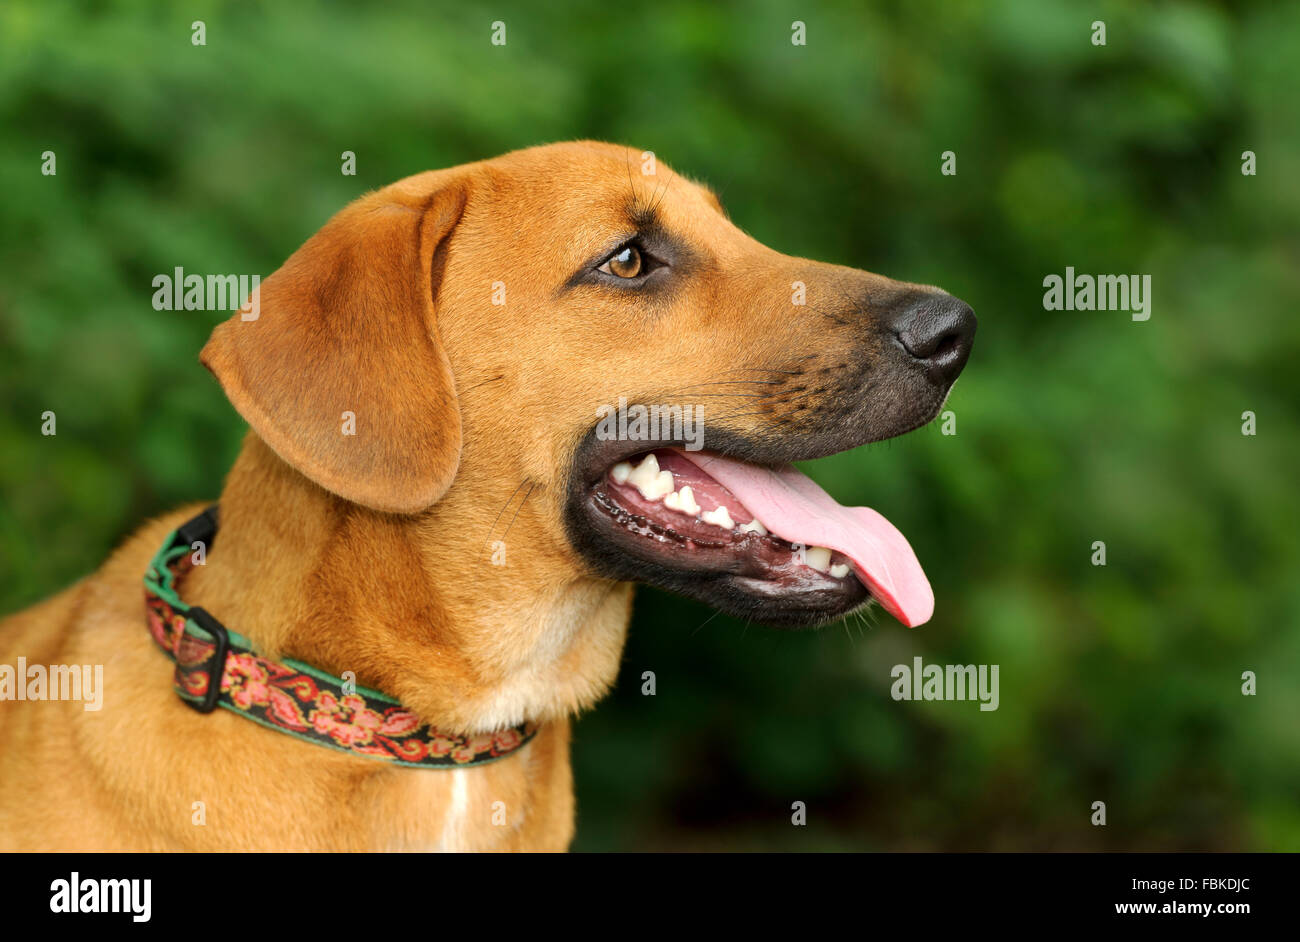 Tête de chien est un profil d'un beau brun chien avec sa langue heureusement sortant de sa bouche. Image prise avec Niko Banque D'Images